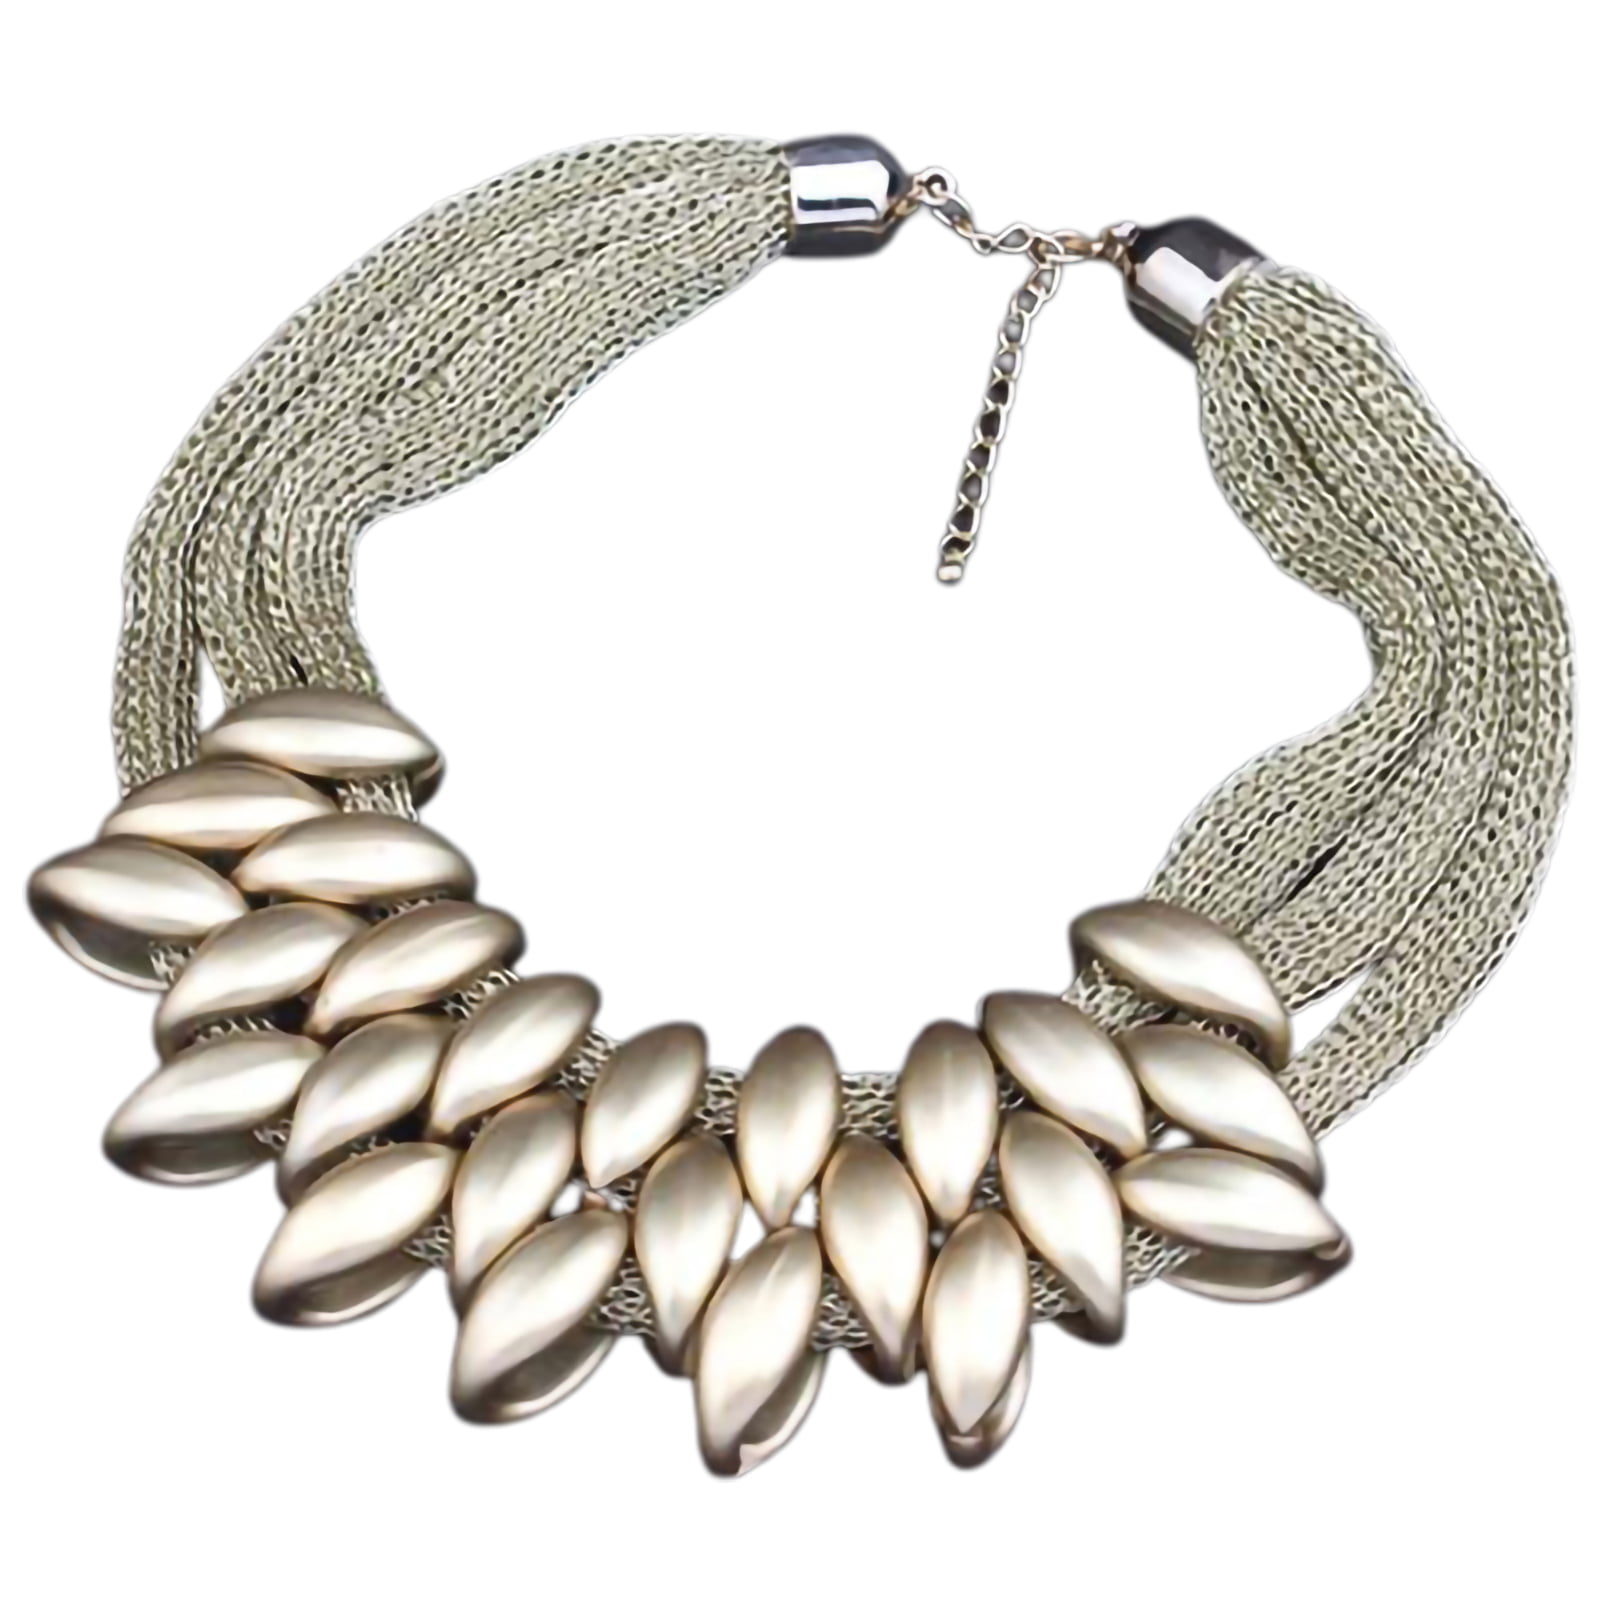 Fashion jewellery hematite woven glass crystal layered statement choker necklace